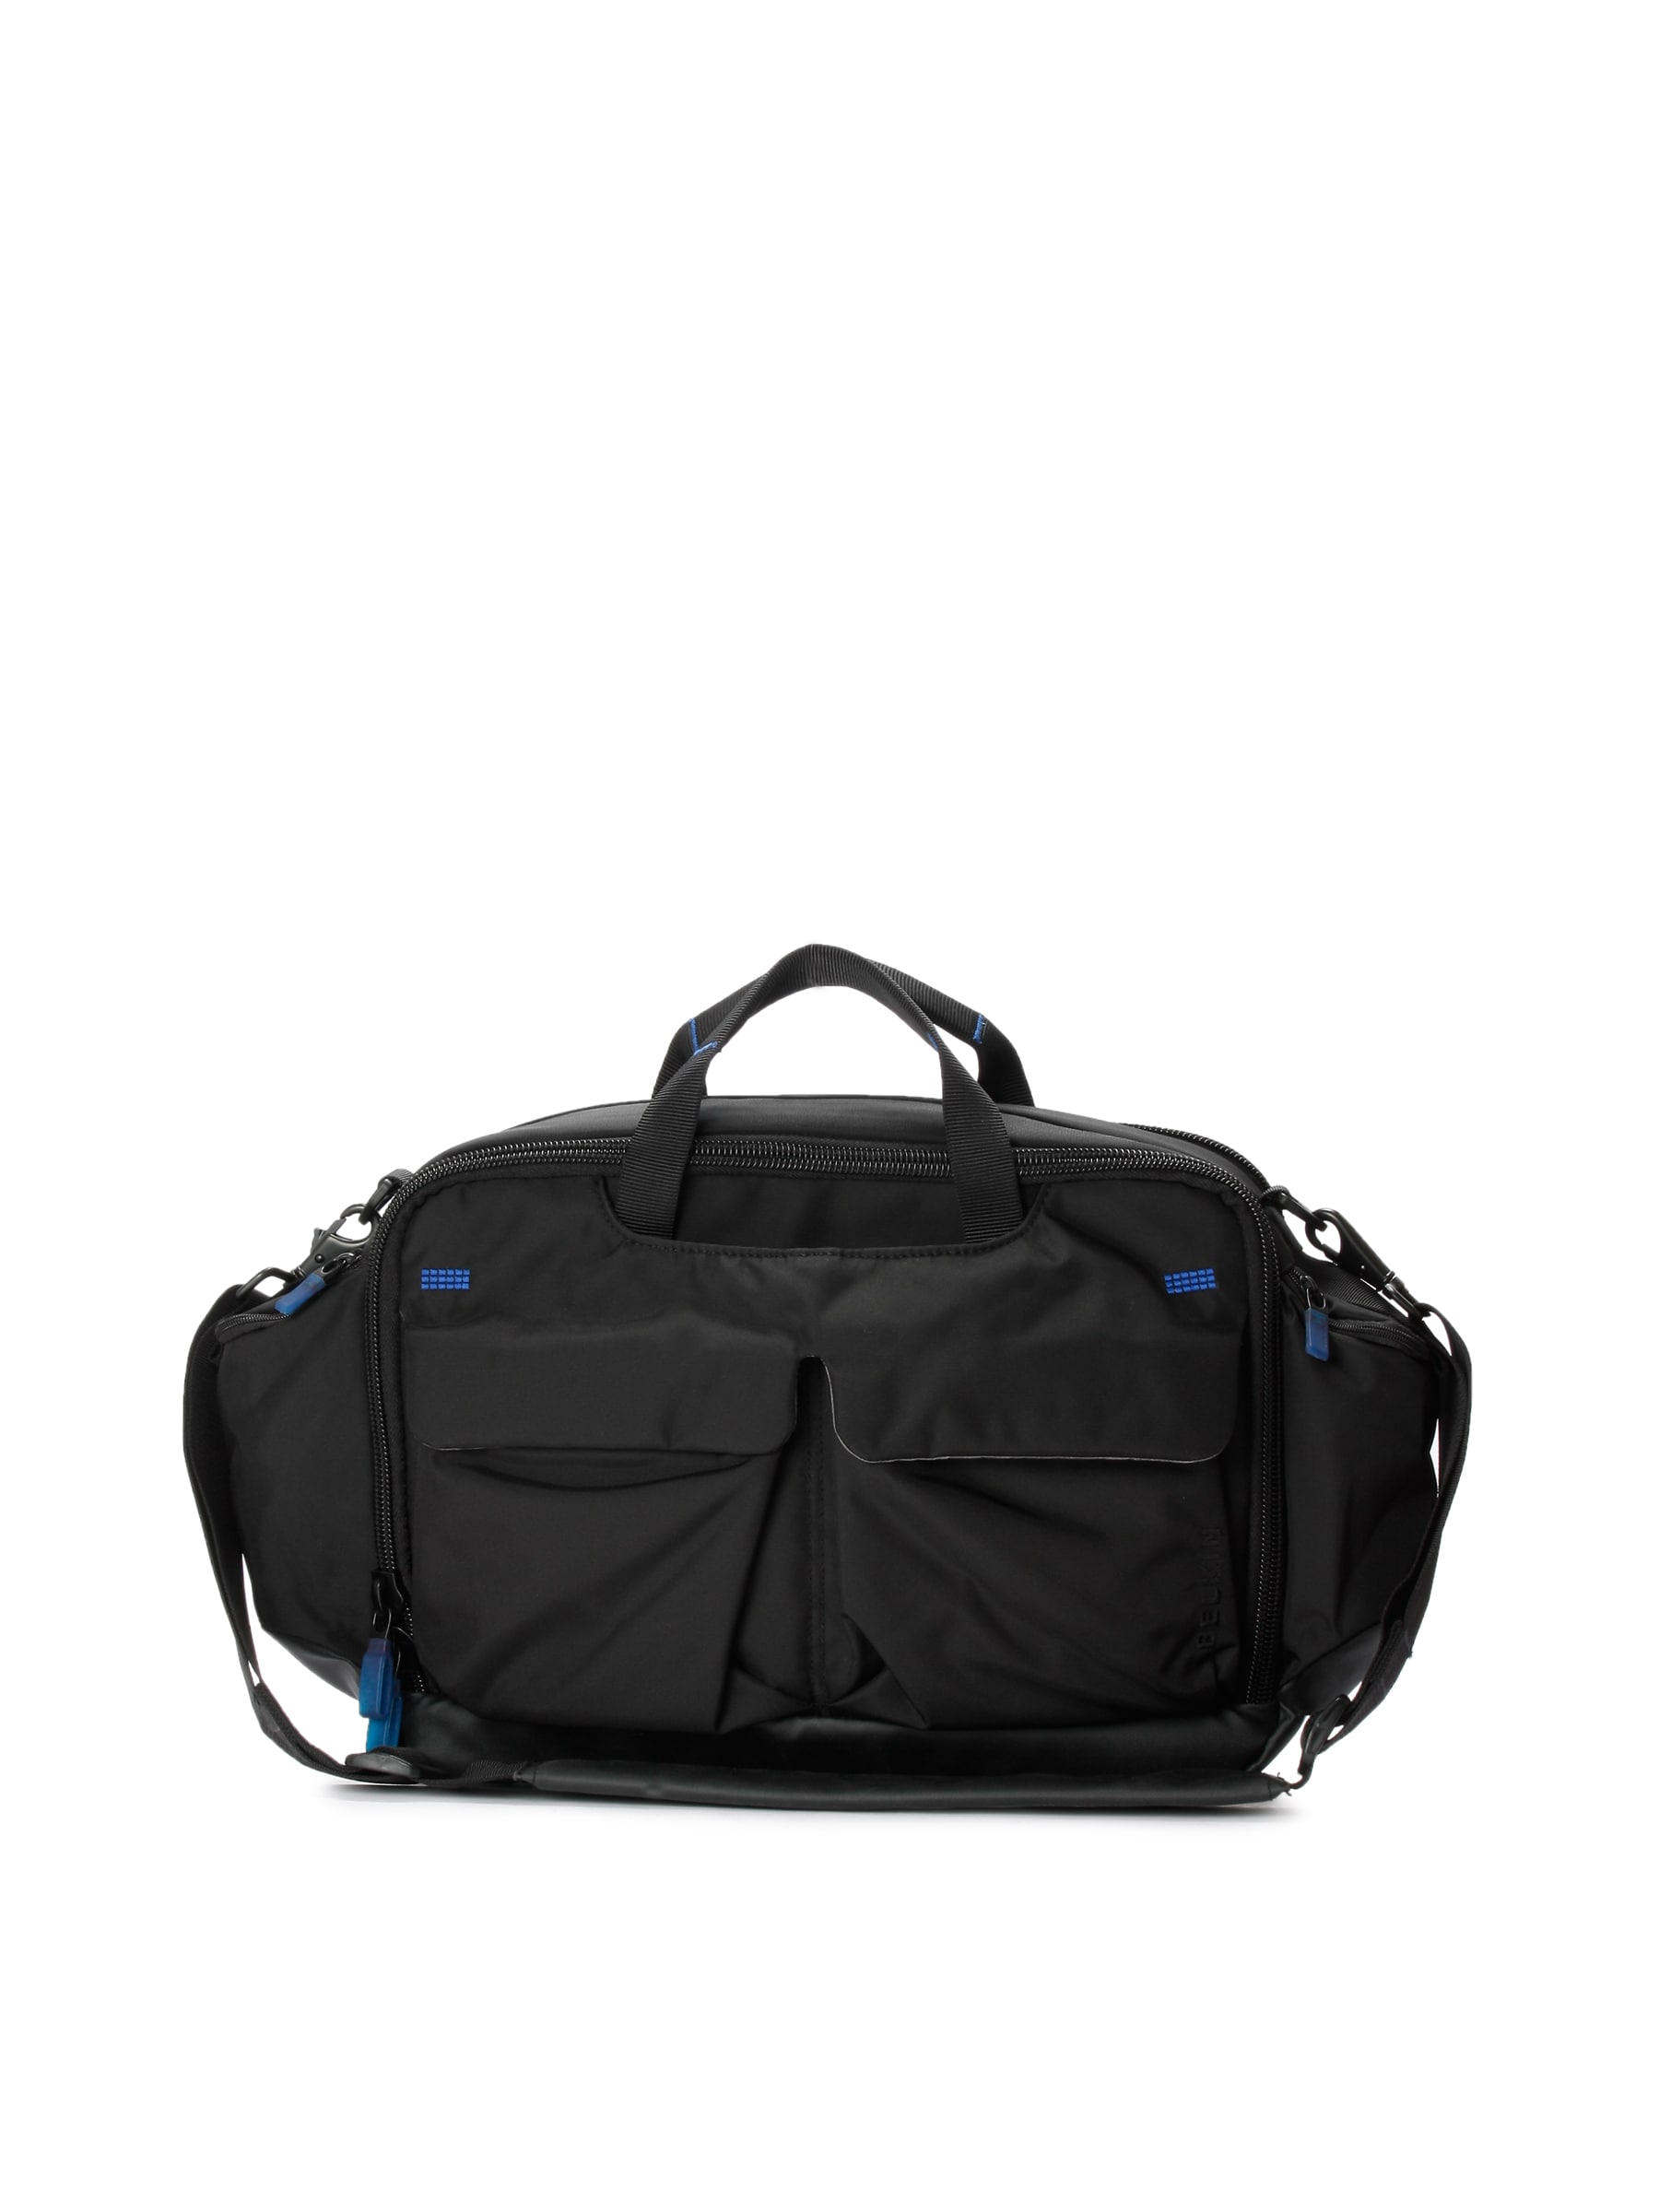 Belkin Unisex Move Toploader Black Laptop Bag